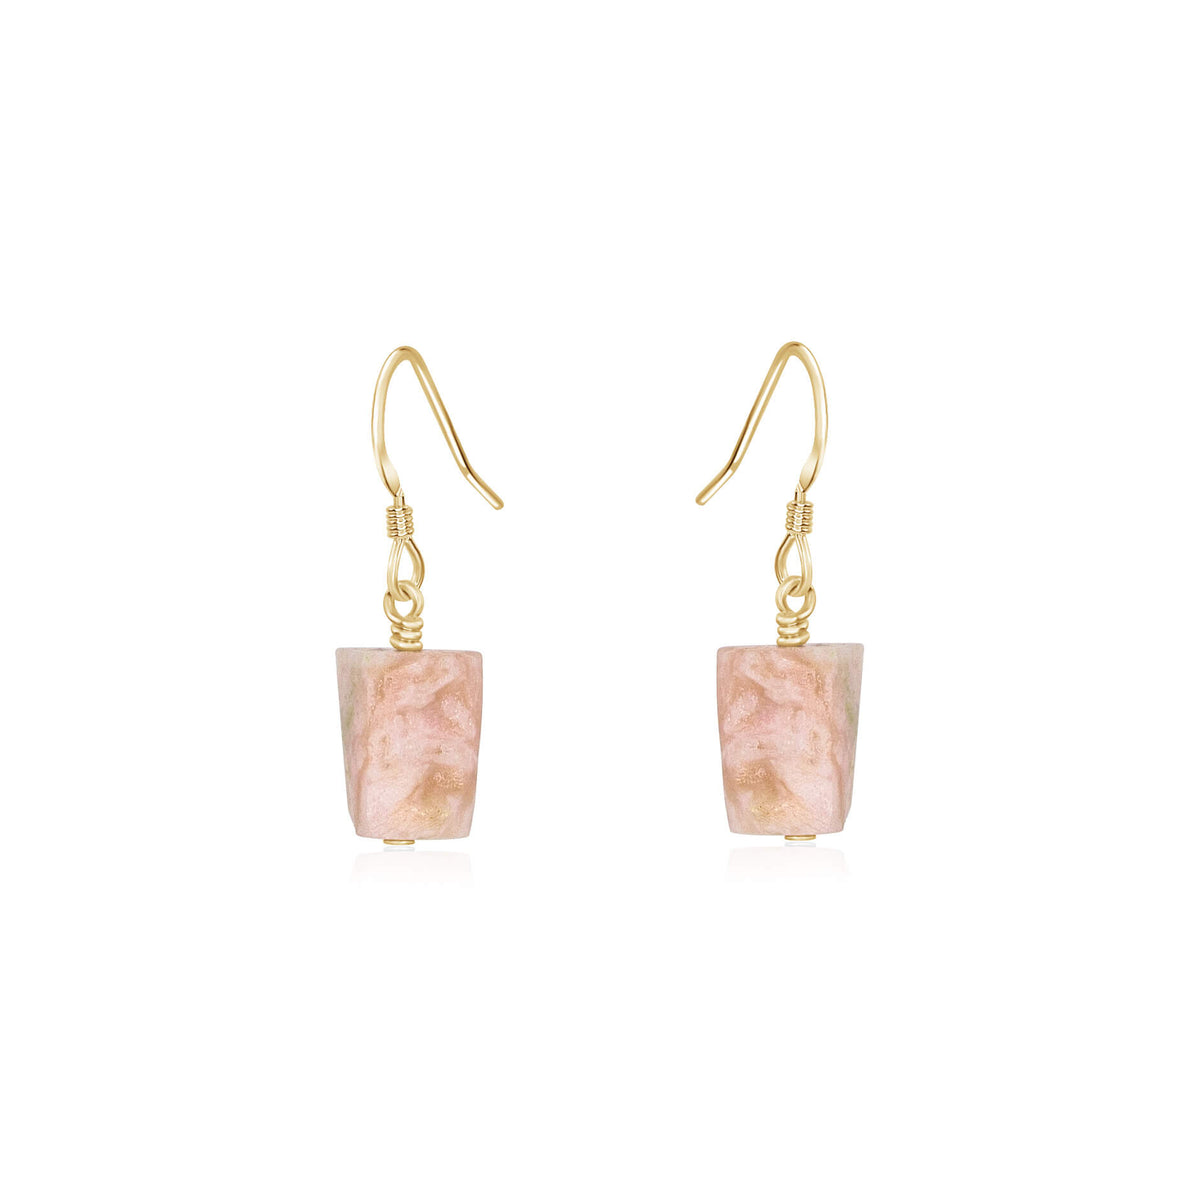 Raw Nugget Earrings - Pink Peruvian Opal - 14K Gold Fill - Luna Tide Handmade Jewellery